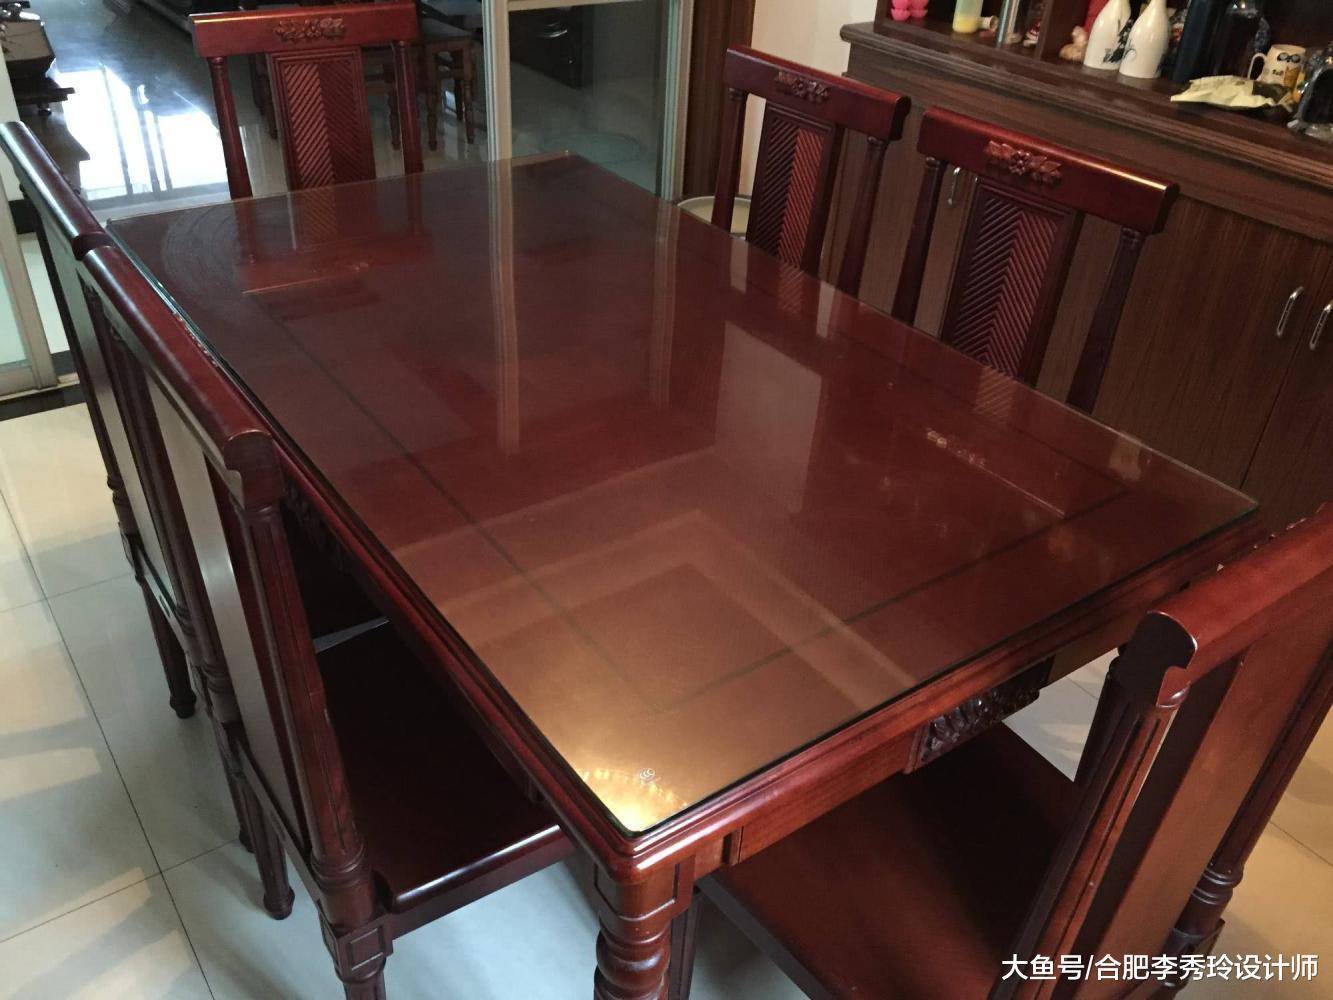 花4000块买张实木餐桌, 还有没有必要铺玻璃? 这次终于搞懂了